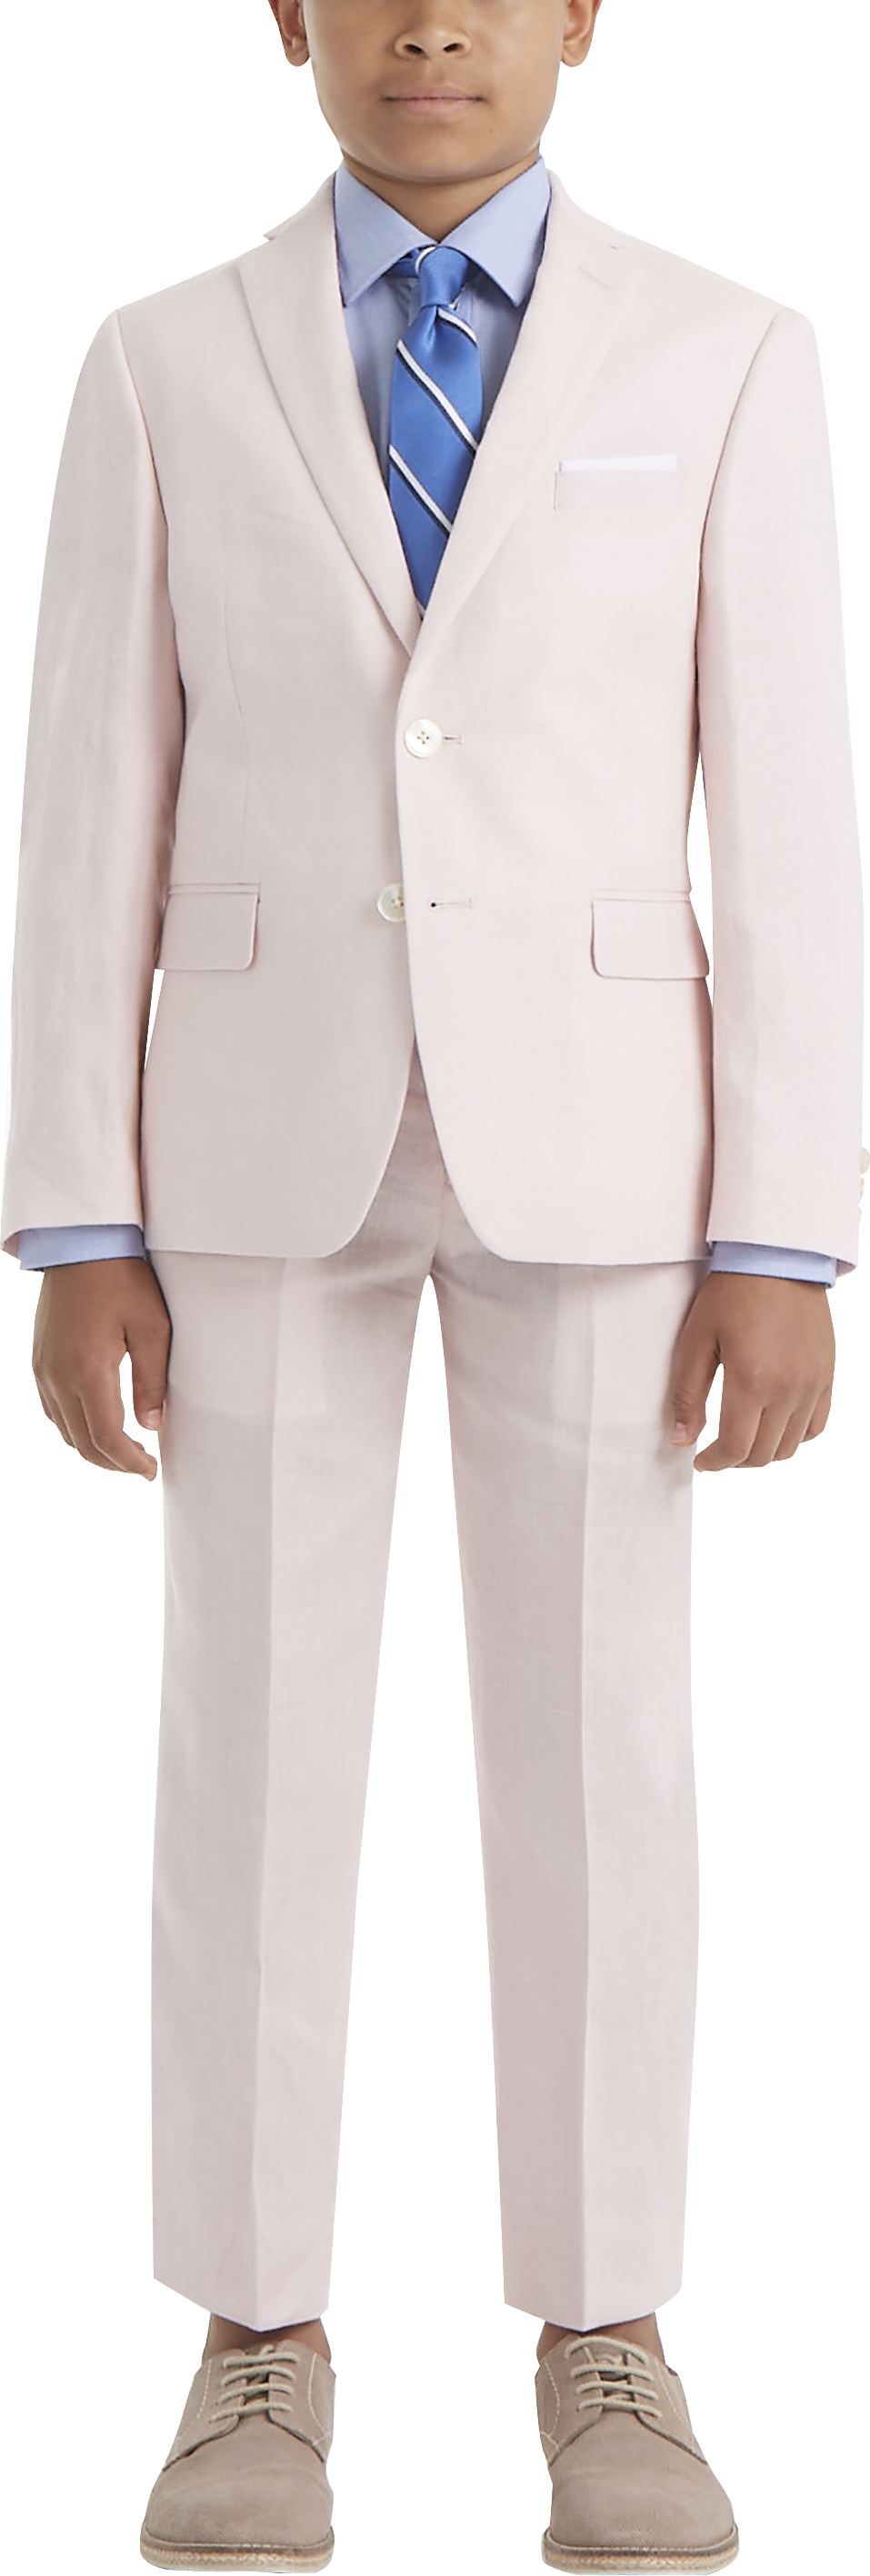 Lauren By Ralph Lauren Boys (Sizes 4-7) Suit Separates Coat, Pink - Men's  Suits | Men's